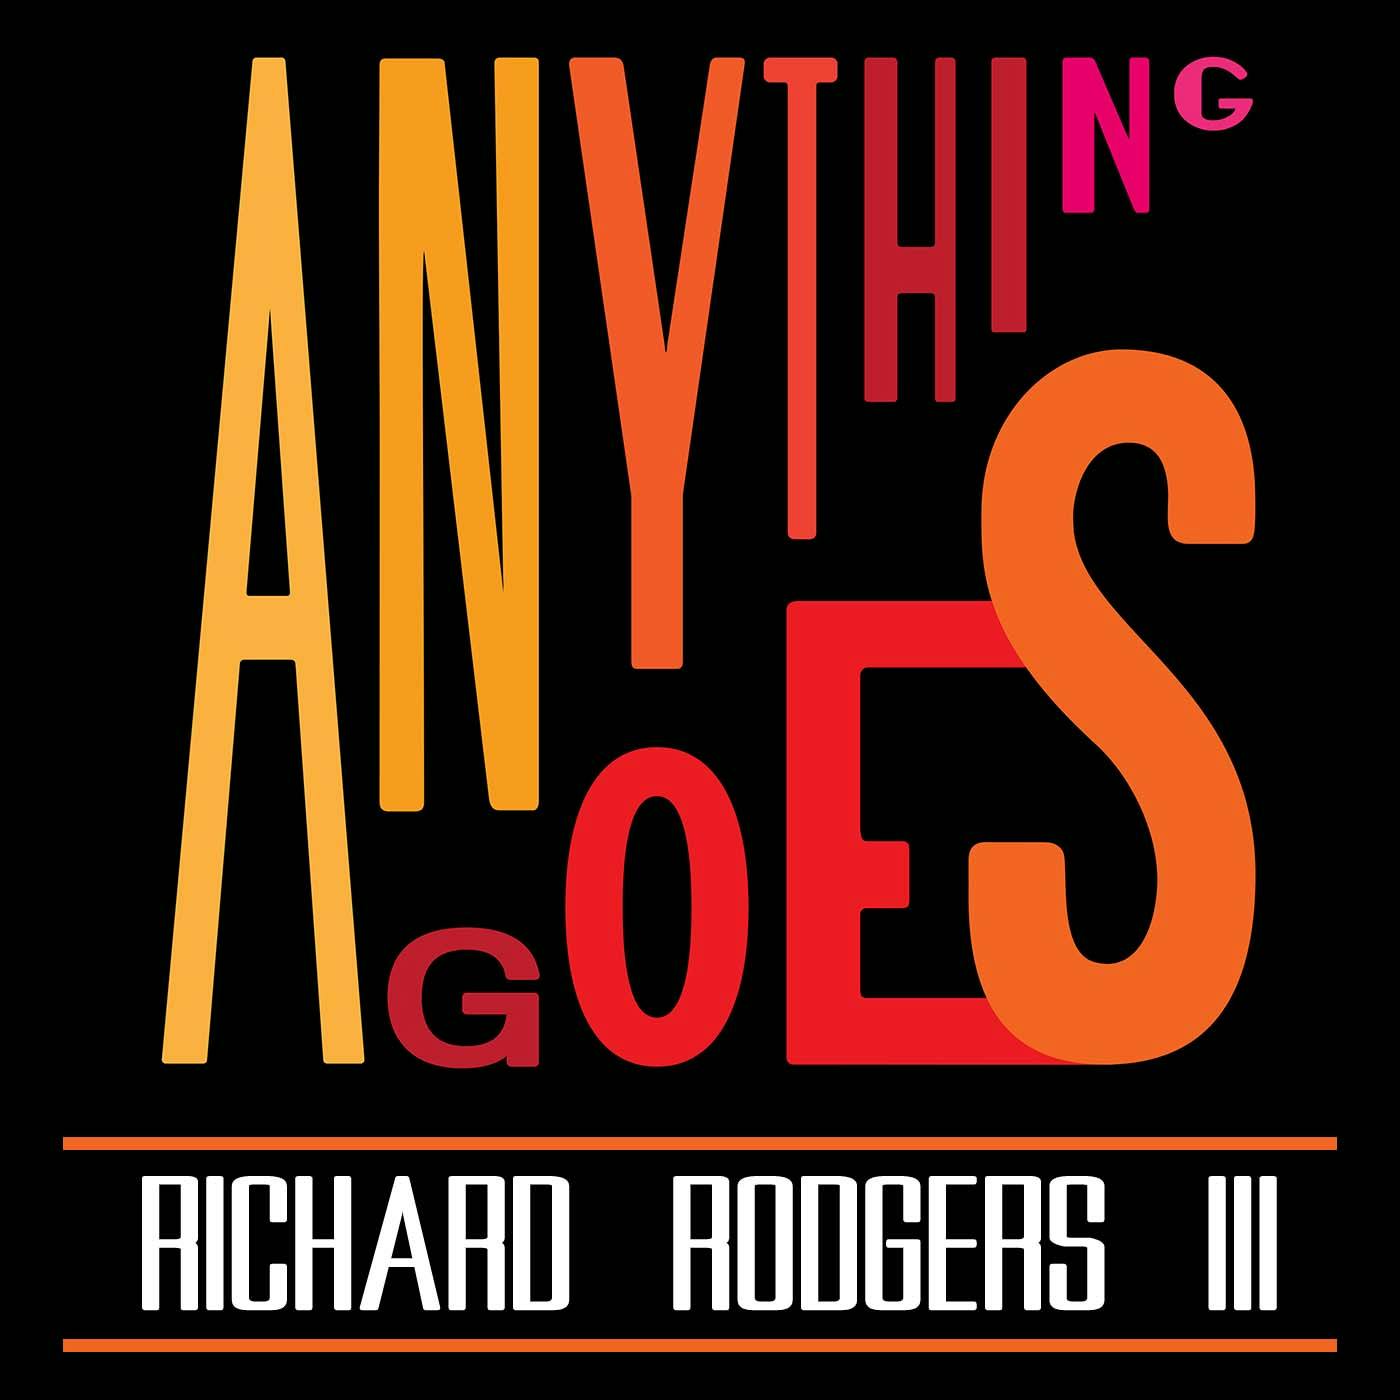 93 Richard Rodgers III